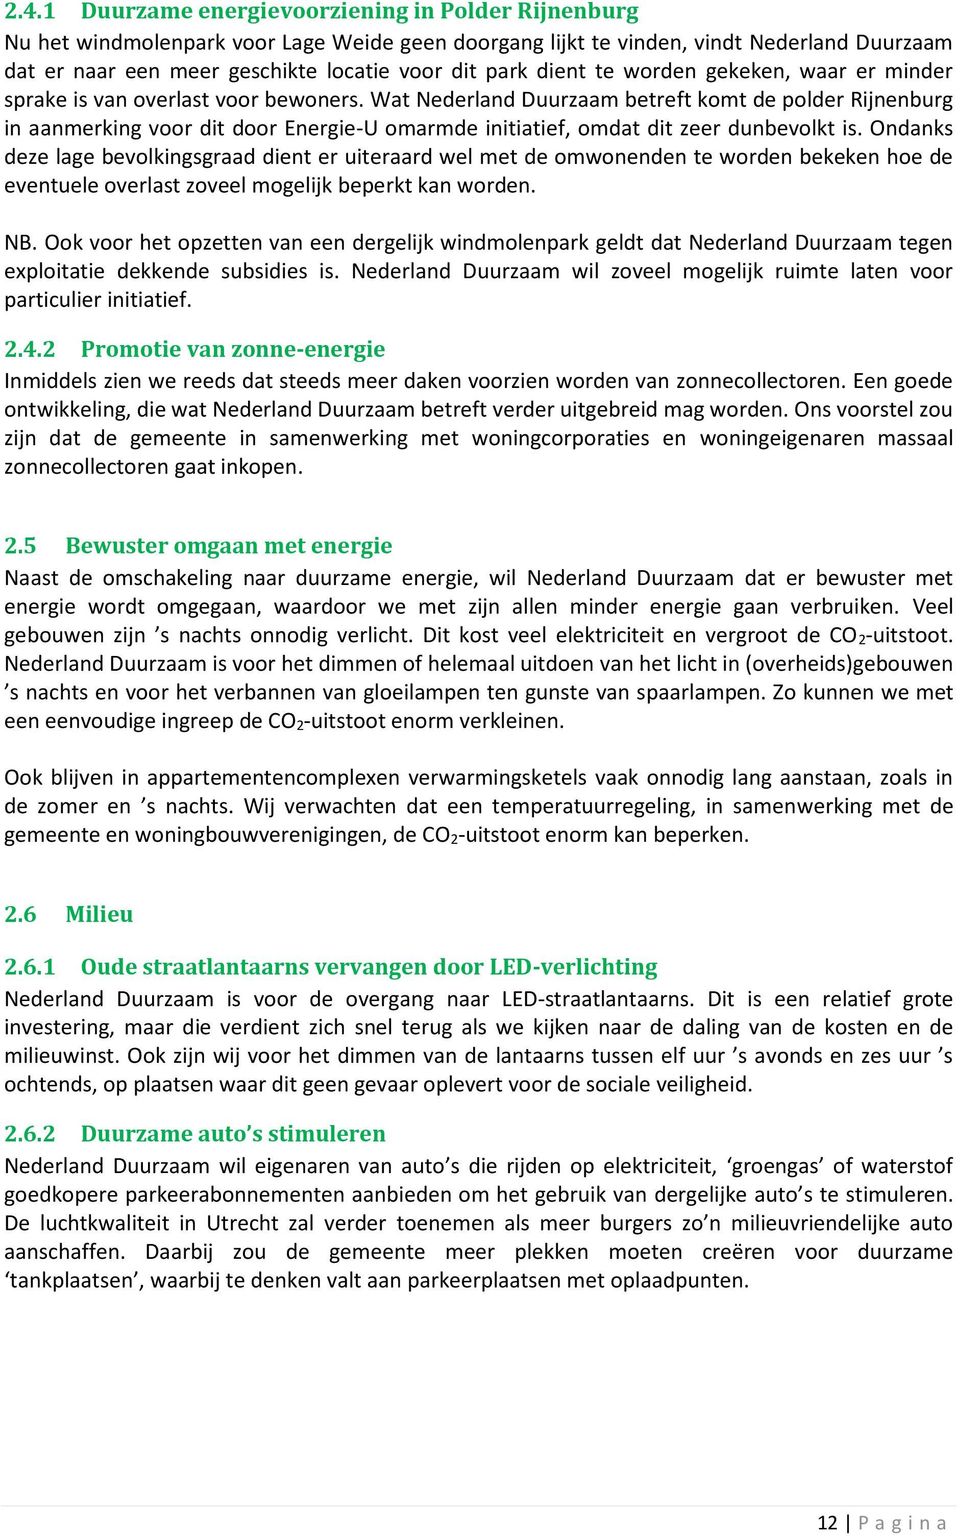 Wat Nederland Duurzaam betreft komt de polder Rijnenburg in aanmerking voor dit door Energie-U omarmde initiatief, omdat dit zeer dunbevolkt is.